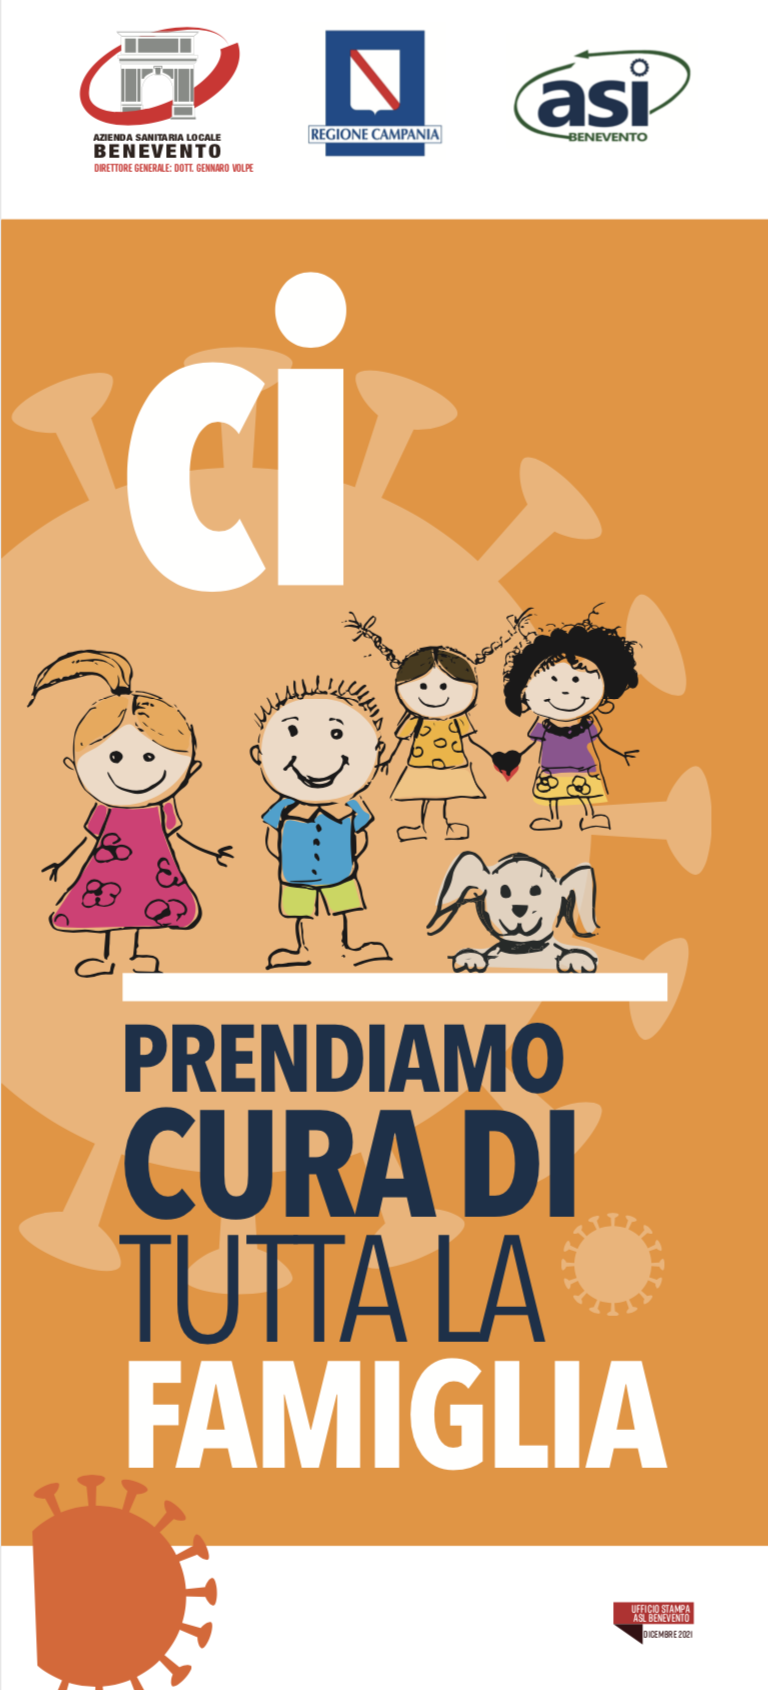 Benevento| Covid, tutto pronto per le vaccinazioni ai bambini. Venerdi somministrazioni alla Scuola Primaria Bilingue